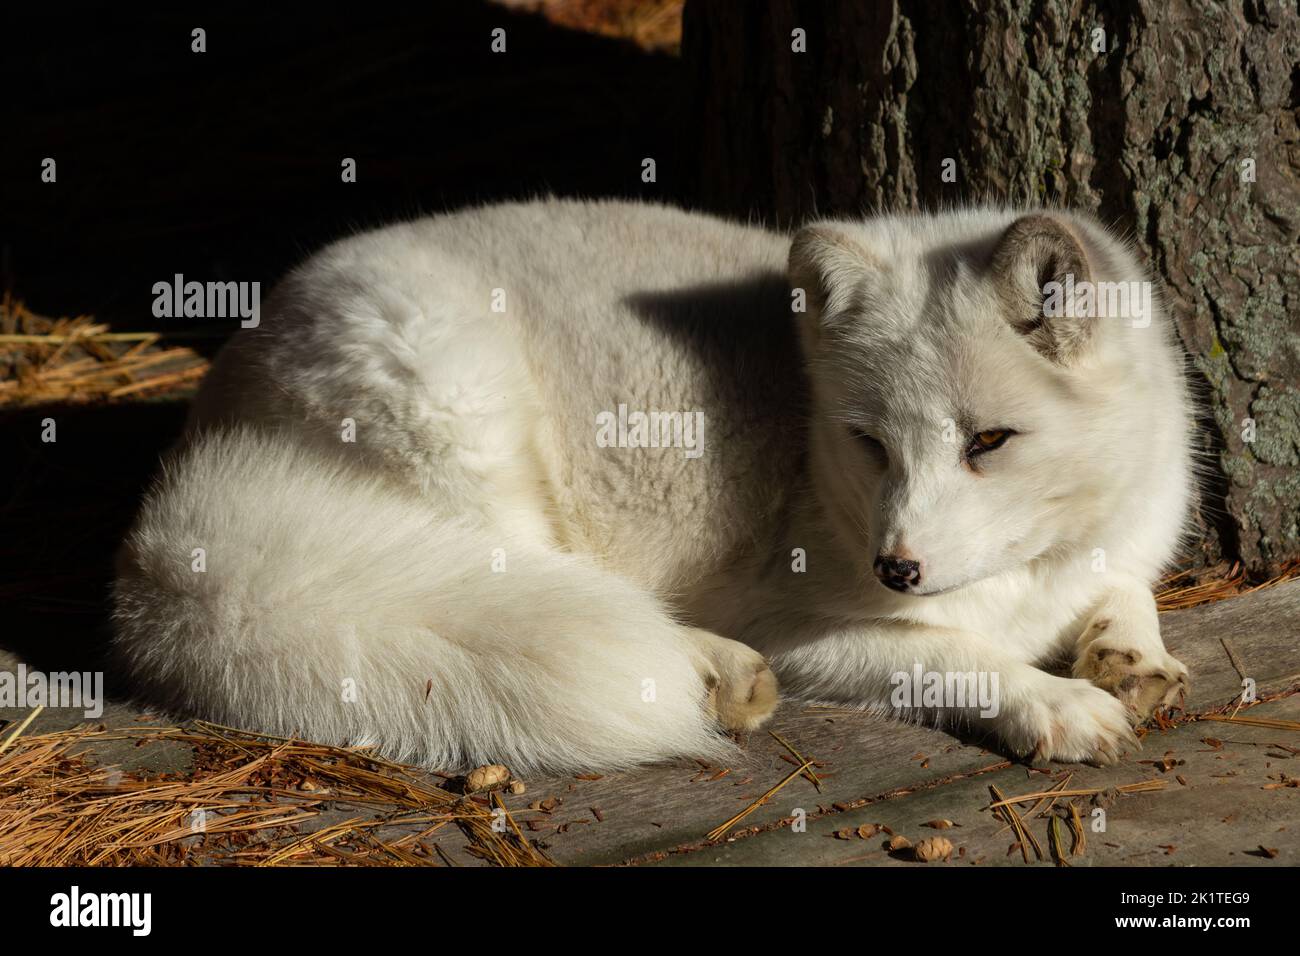 Ein arktischer Fuchs liegt auf einem Baumhausboden, beugt seine Krallen, der Schwanz rollt um seinen Körper. Stockfoto